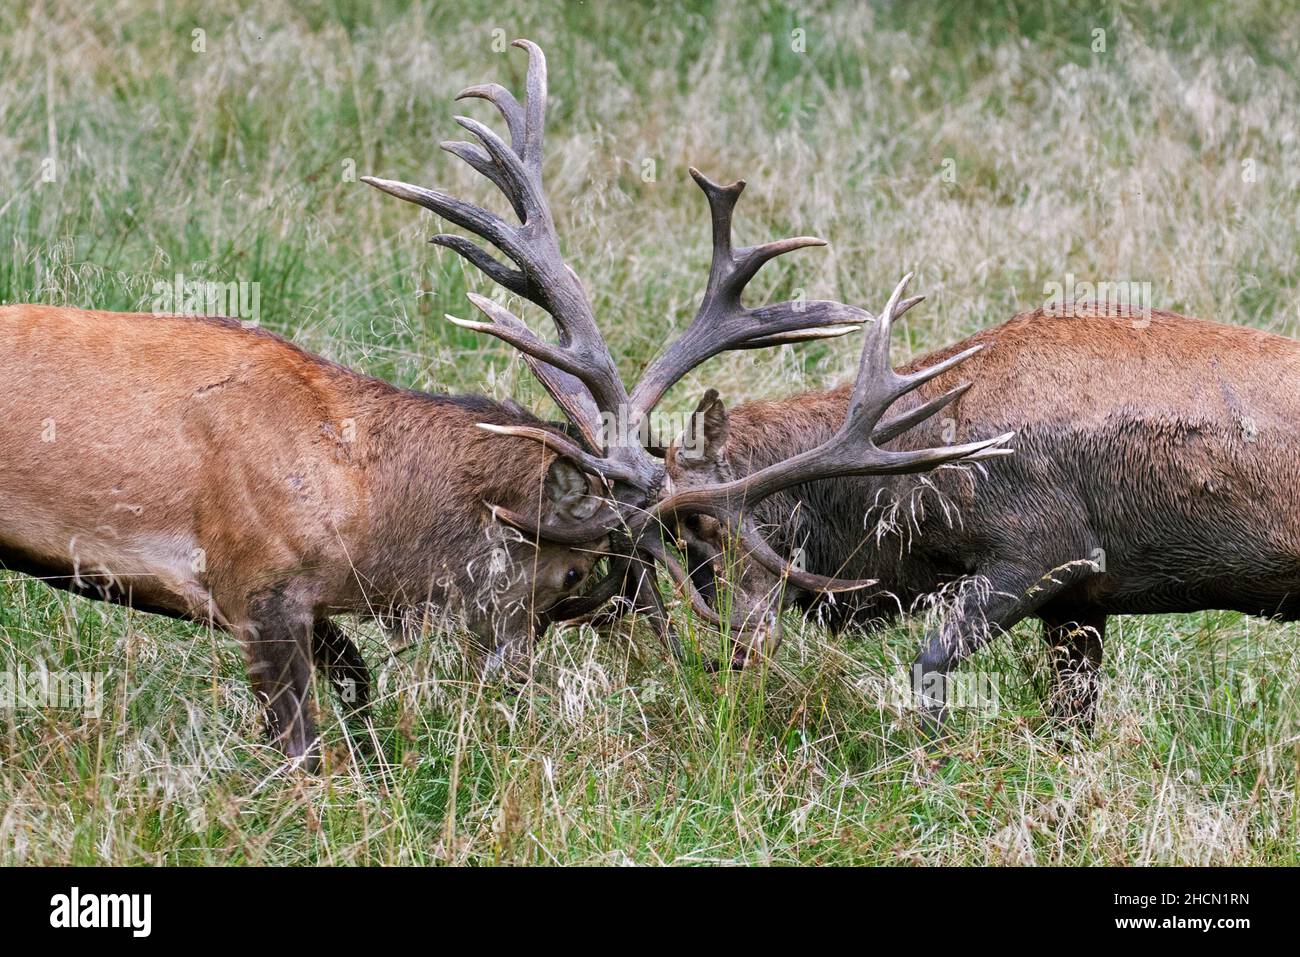 Deux cerfs rouges ruleurs (Cervus elaphus) se battent en bloquant les bois lors d'une bataille féroce dans les prairies au bord de la forêt pendant la rut en automne Banque D'Images